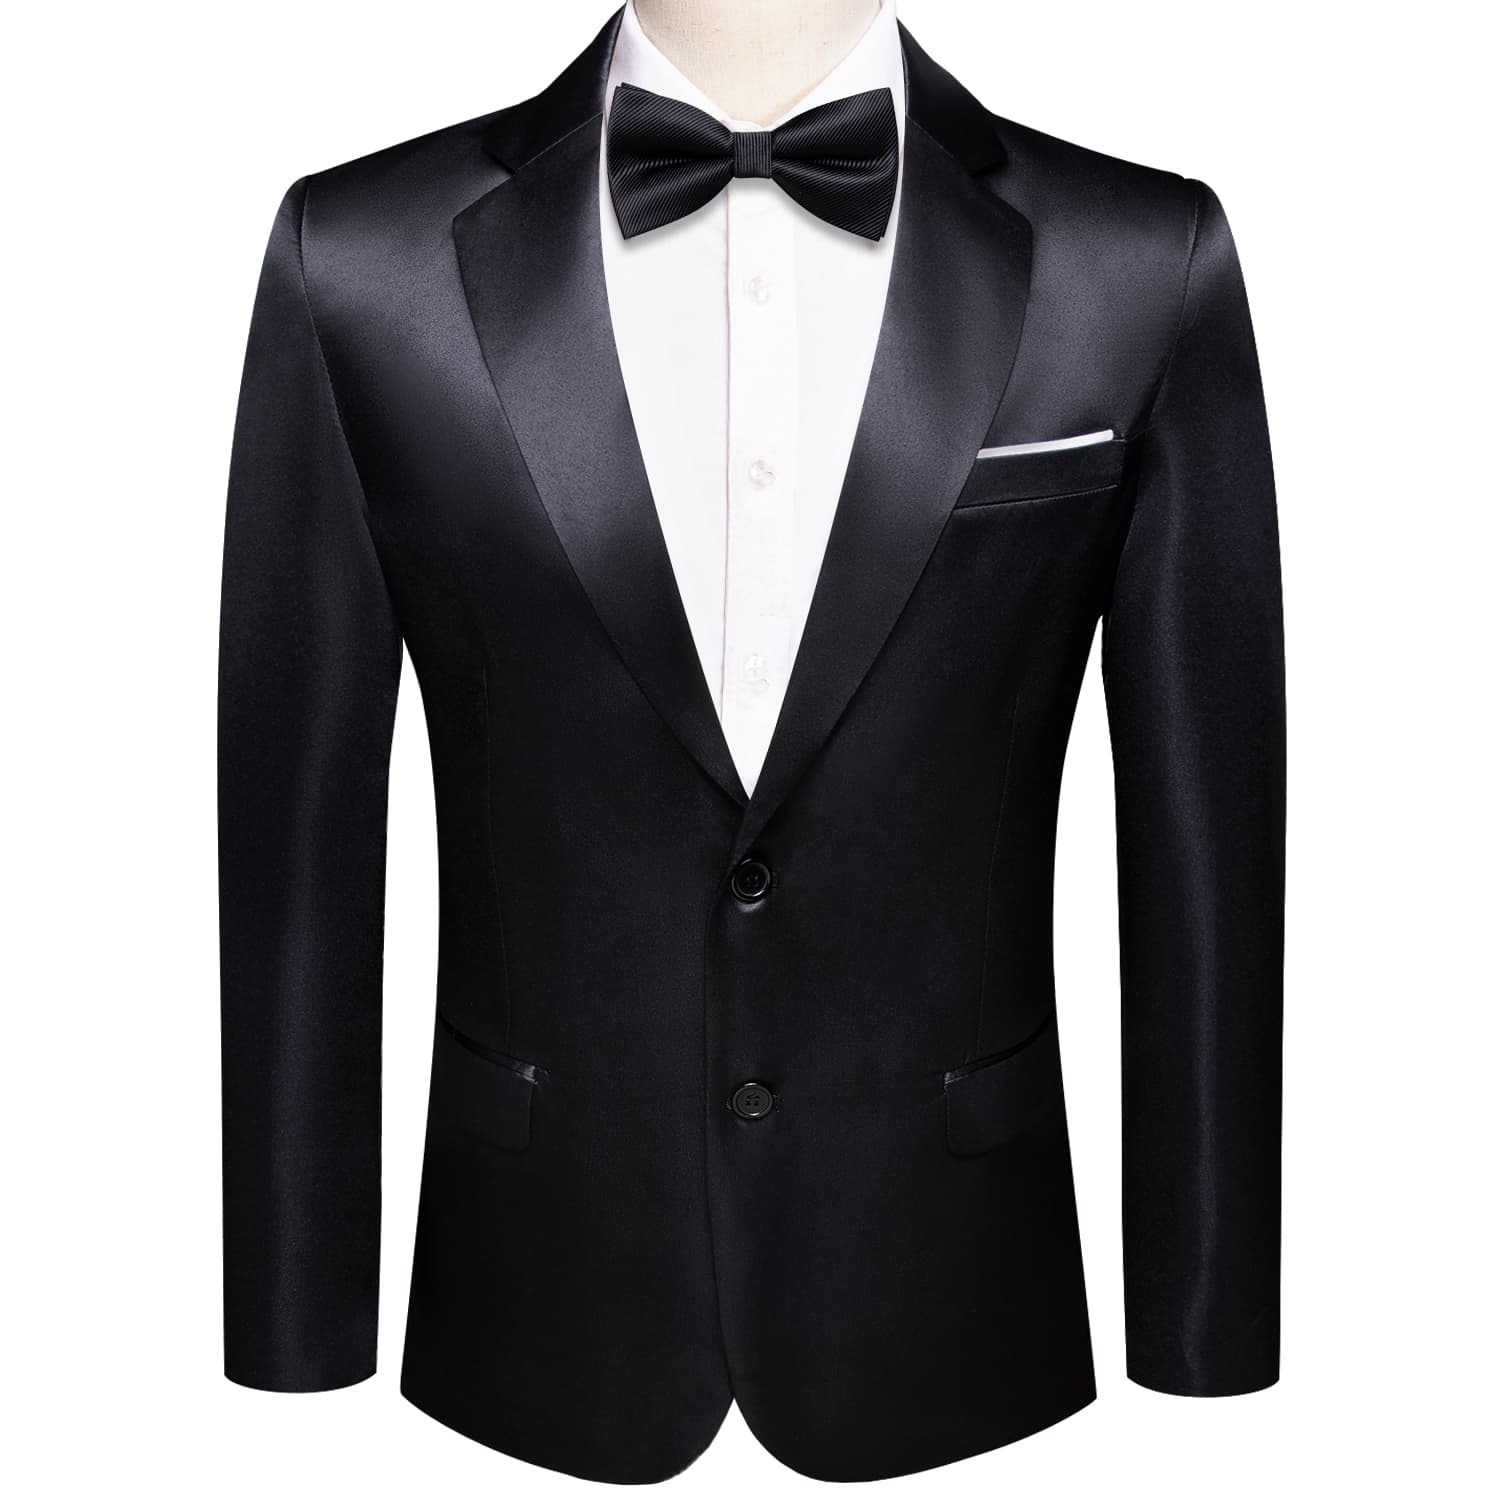  Blazer Black Men's Wedding Business Solid Top Men Suit